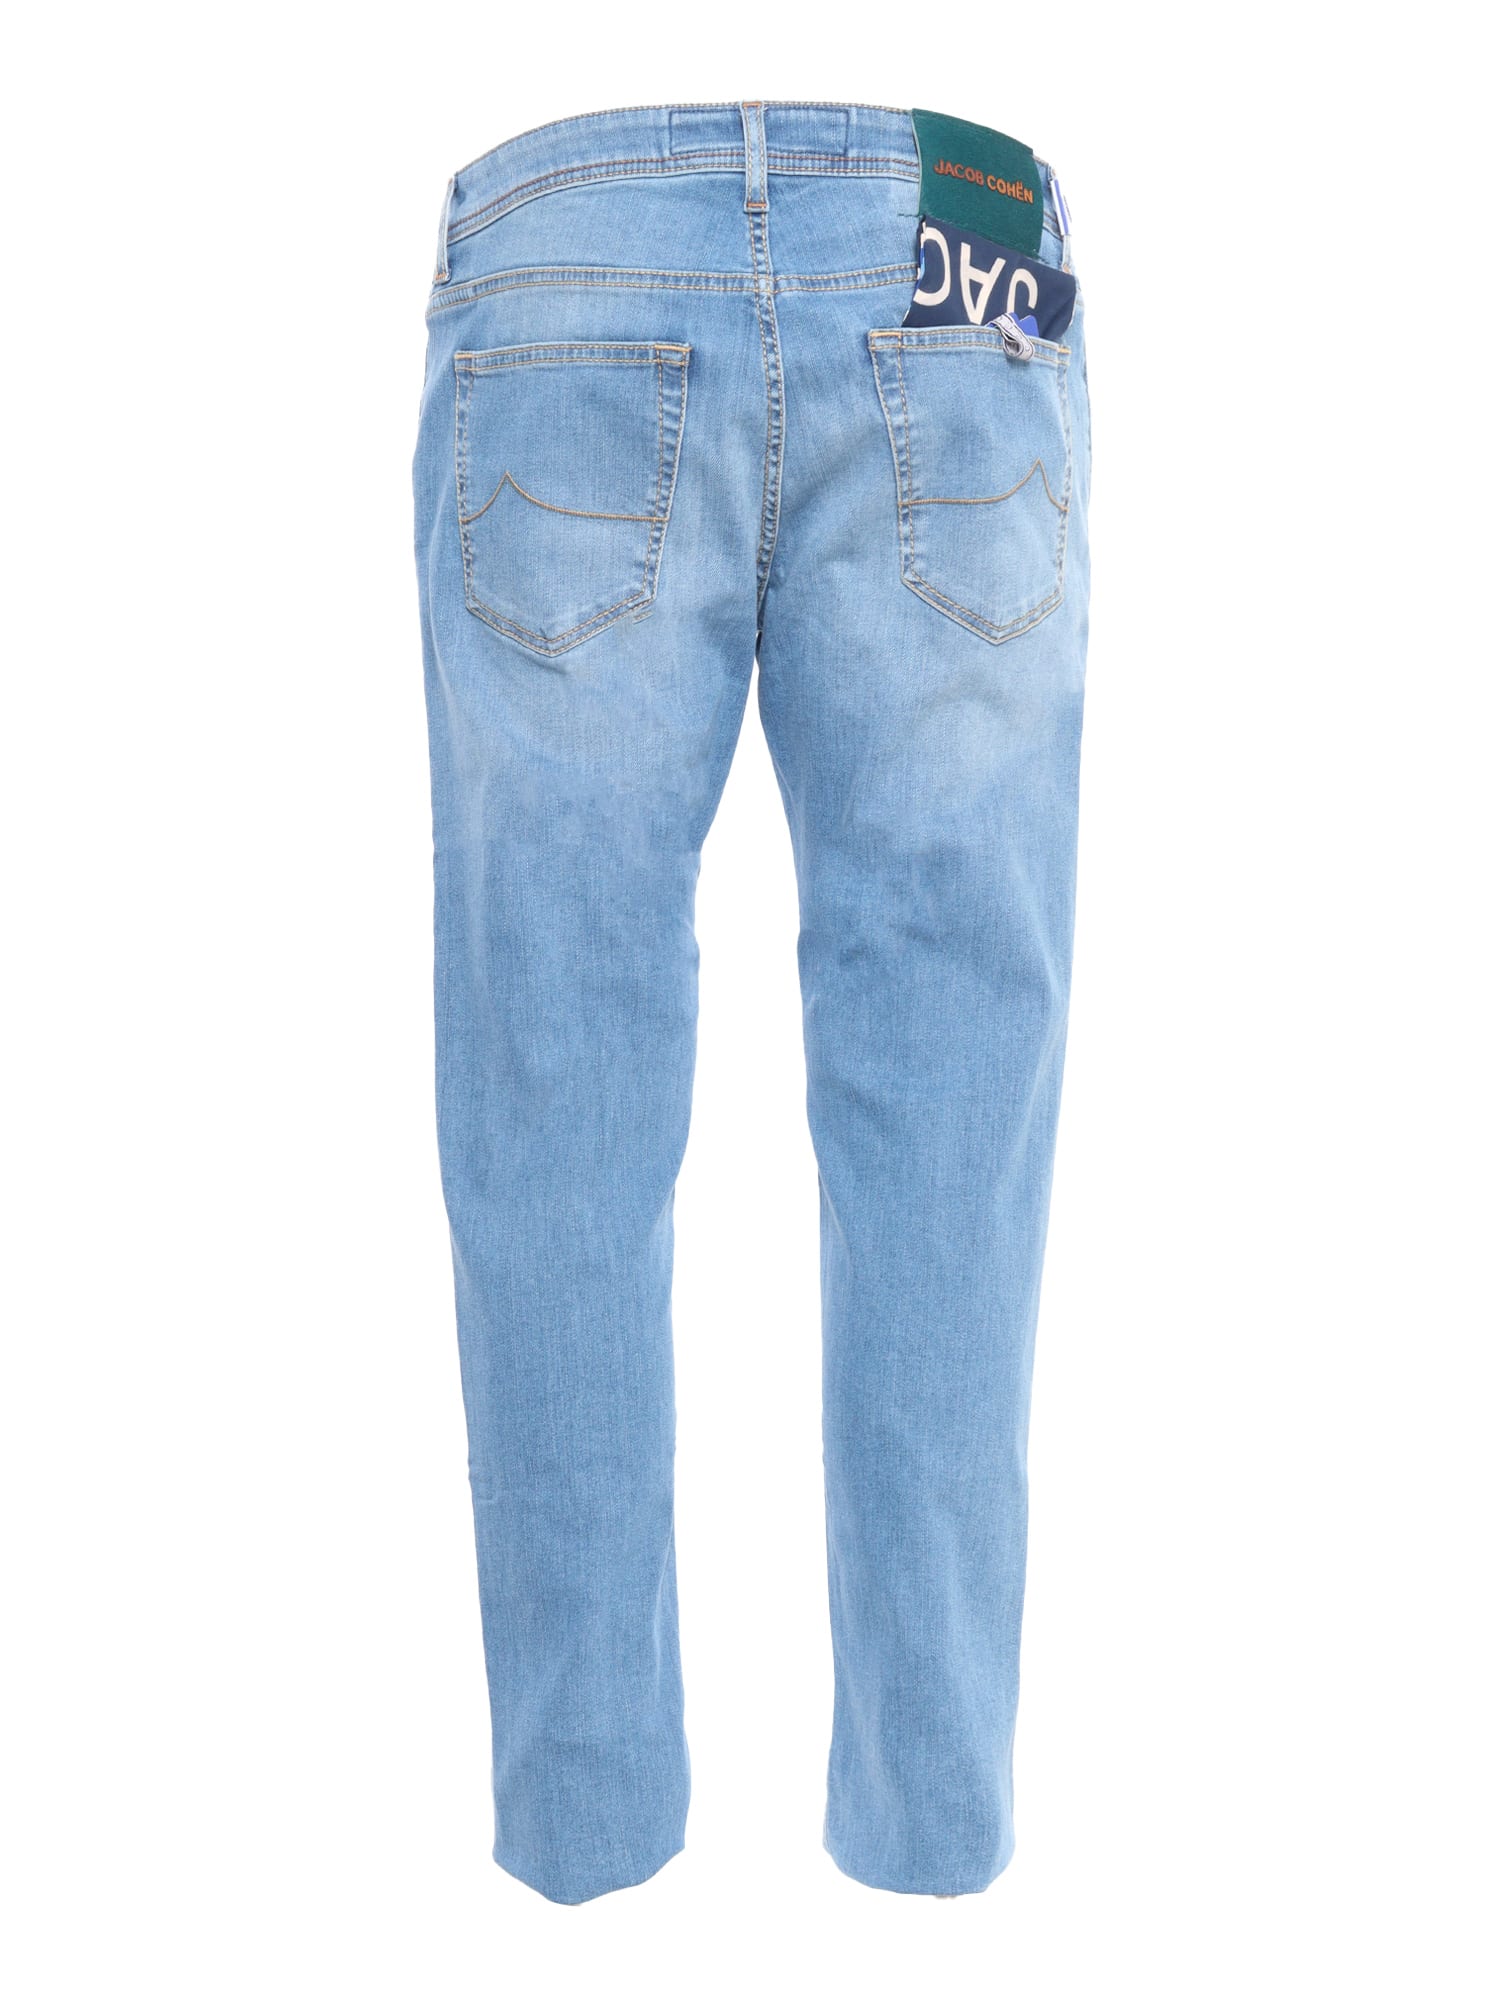 Shop Jacob Cohen Light Blue Jeans